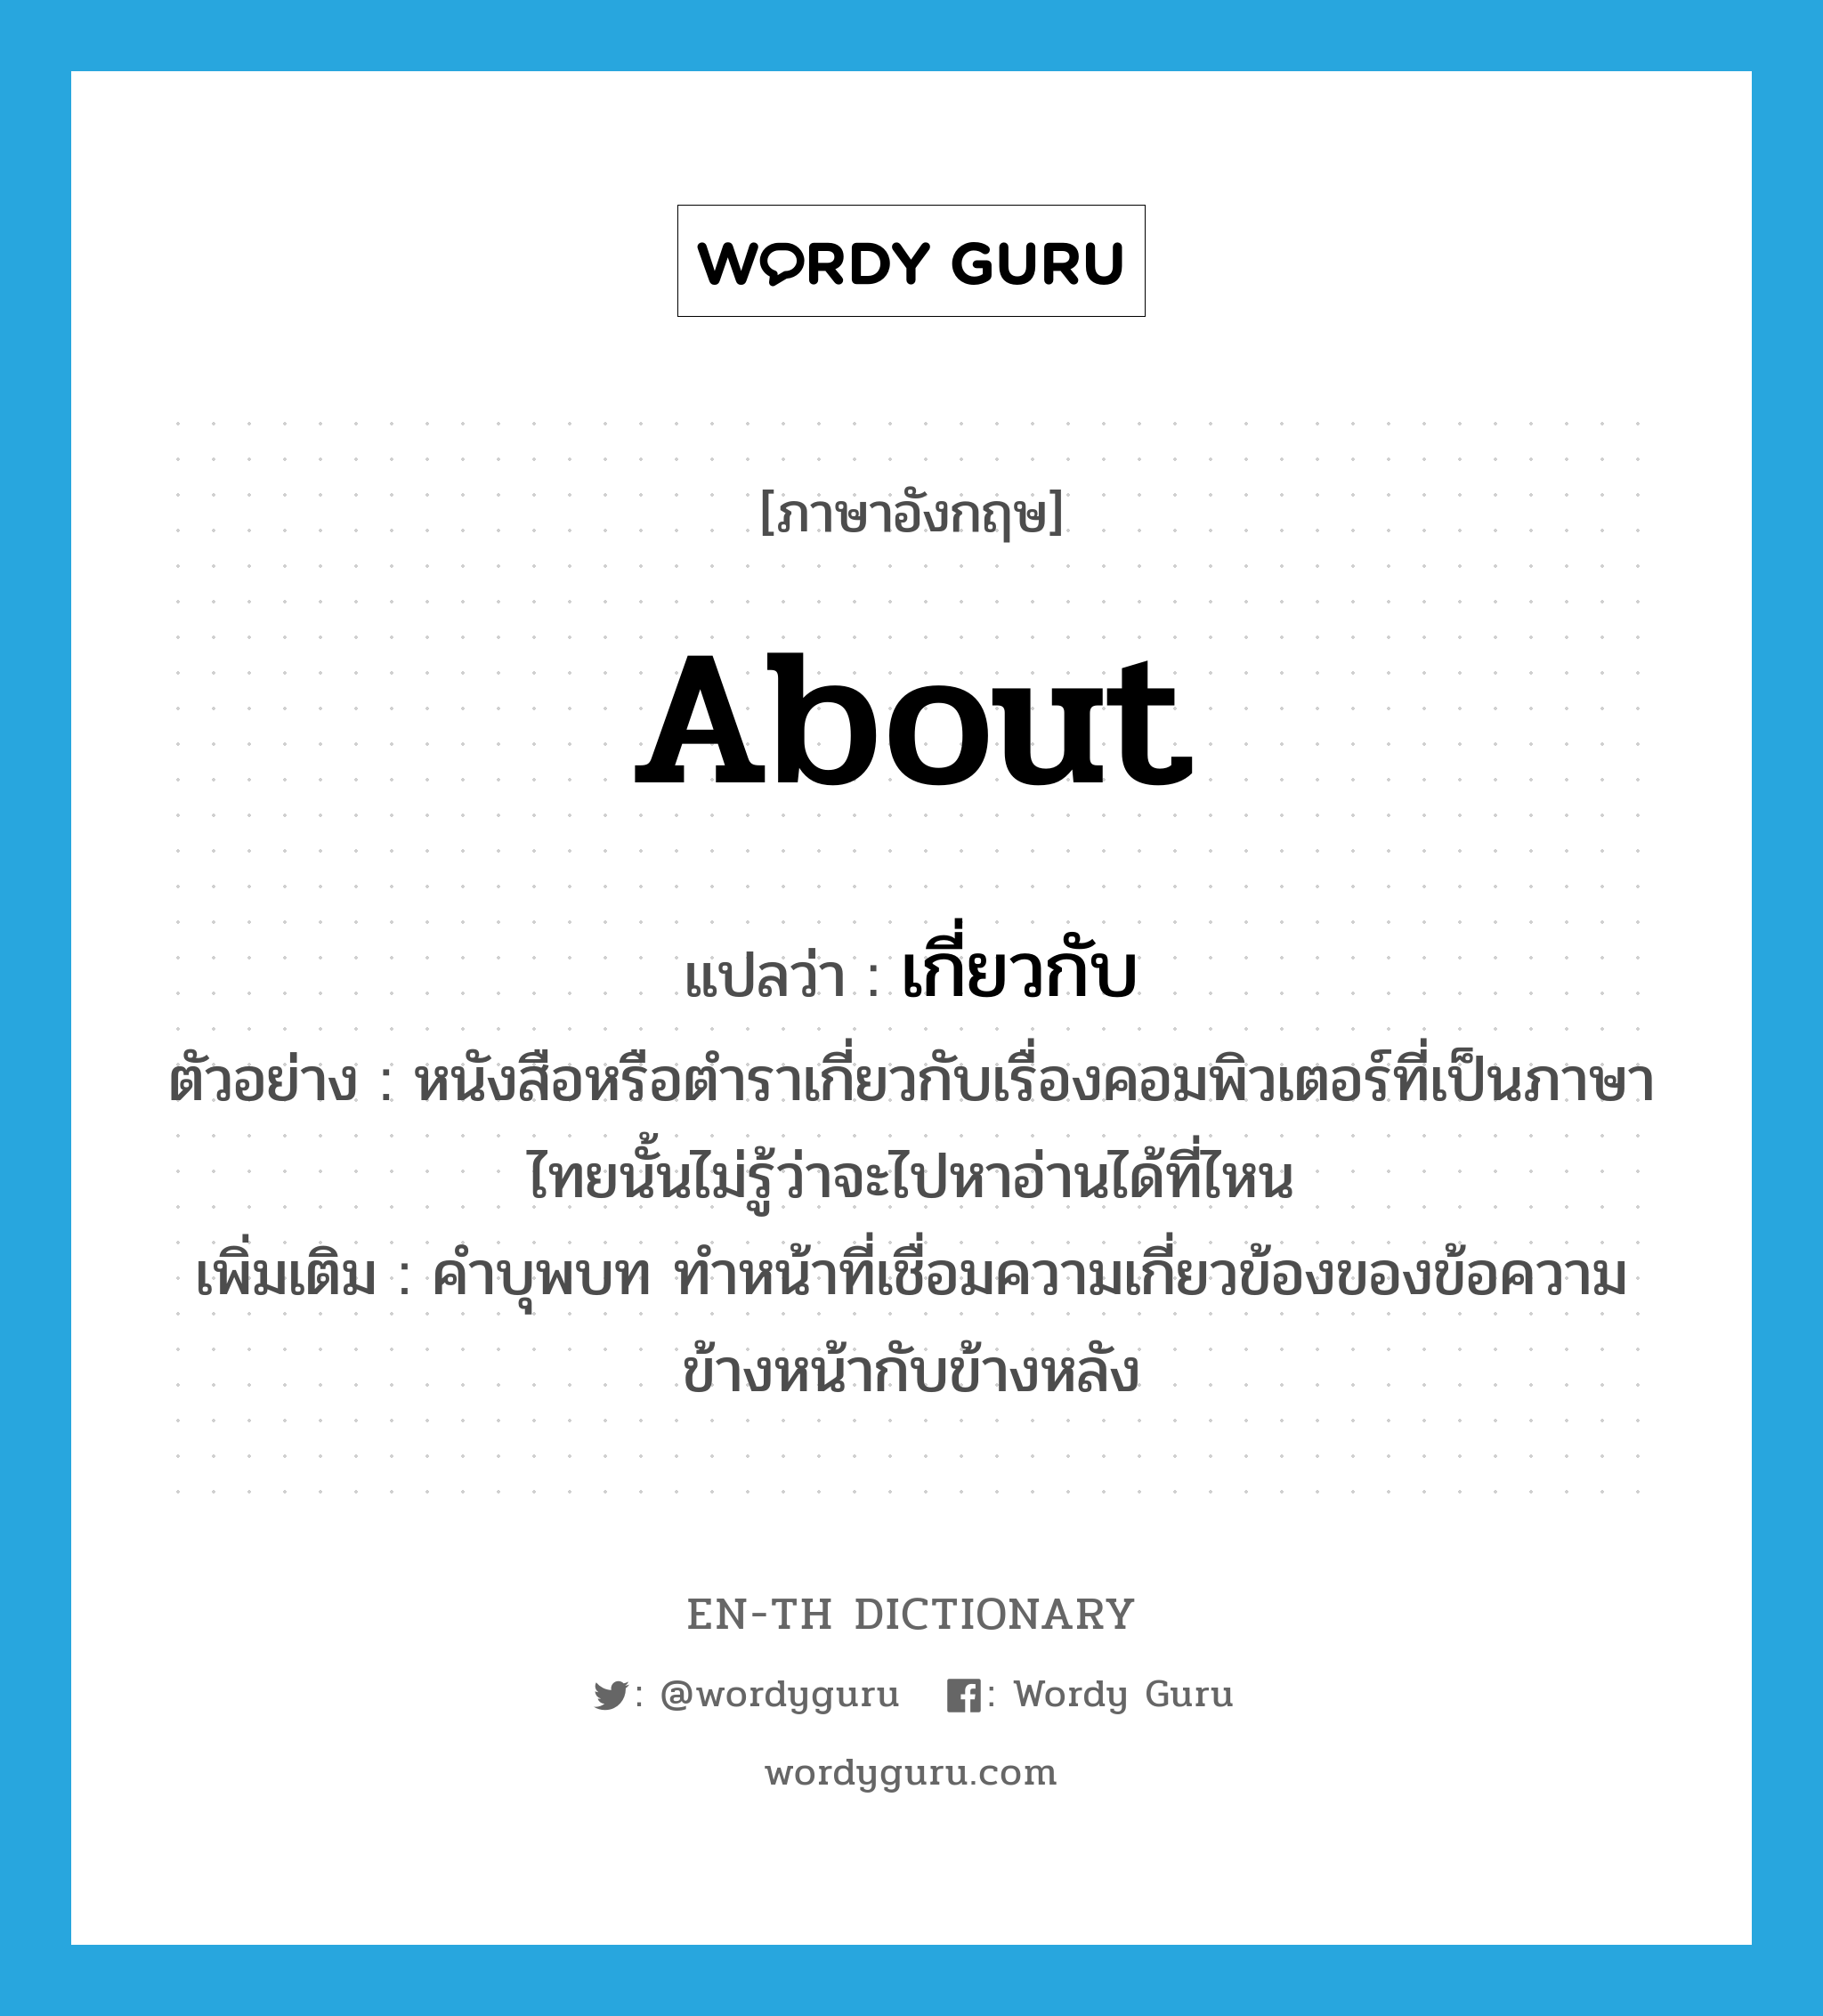 เกี่ยวกับ ภาษาอังกฤษ?, คำศัพท์ภาษาอังกฤษ เกี่ยวกับ แปลว่า about ประเภท PREP ตัวอย่าง หนังสือหรือตำราเกี่ยวกับเรื่องคอมพิวเตอร์ที่เป็นภาษาไทยนั้นไม่รู้ว่าจะไปหาอ่านได้ที่ไหน เพิ่มเติม คำบุพบท ทำหน้าที่เชื่อมความเกี่ยวข้องของข้อความข้างหน้ากับข้างหลัง หมวด PREP